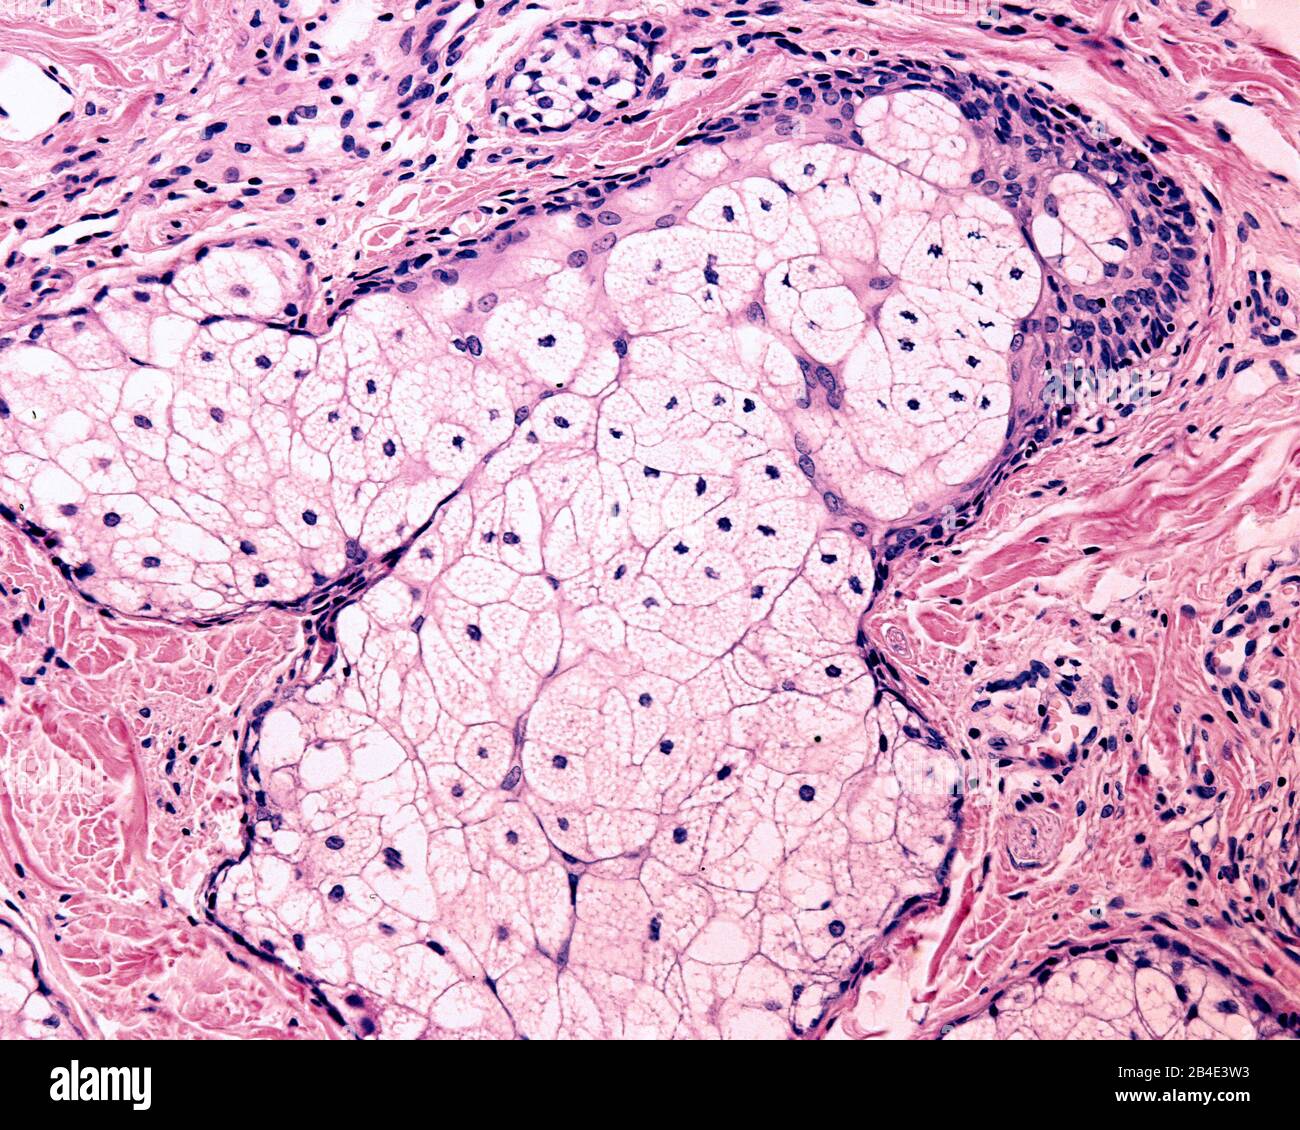 La glande sébacée est une glande holocrine qui sécrète le sébum. Les cellules accumulent des gouttelettes d'huile comme vacuoles claires. Enfin, les cellules meurent, qui est dans Banque D'Images